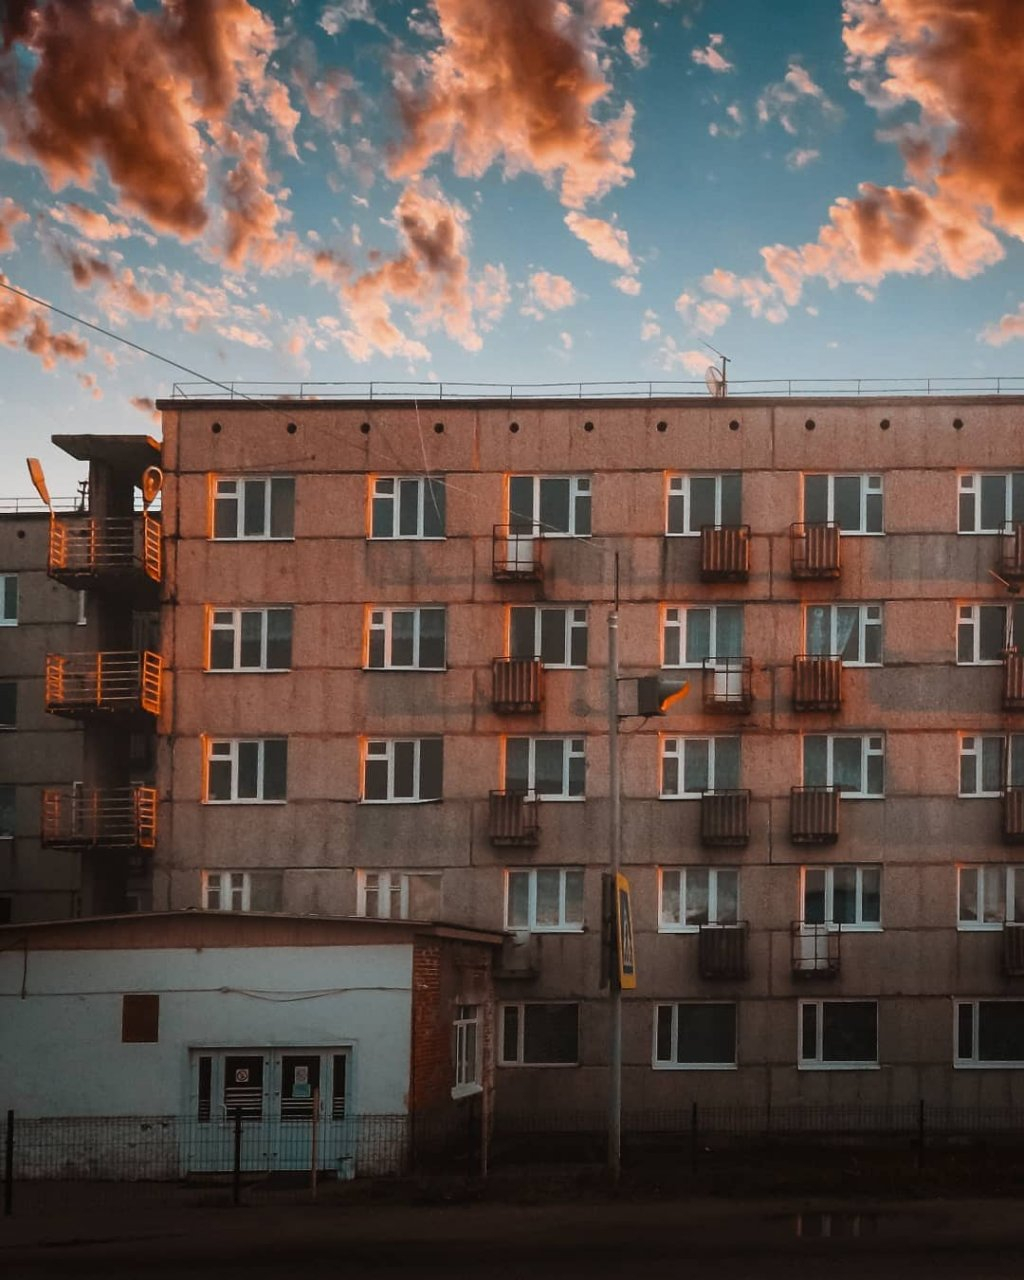 Фото дня в Сыктывкаре: нежные оттенки заката в облаках над городом